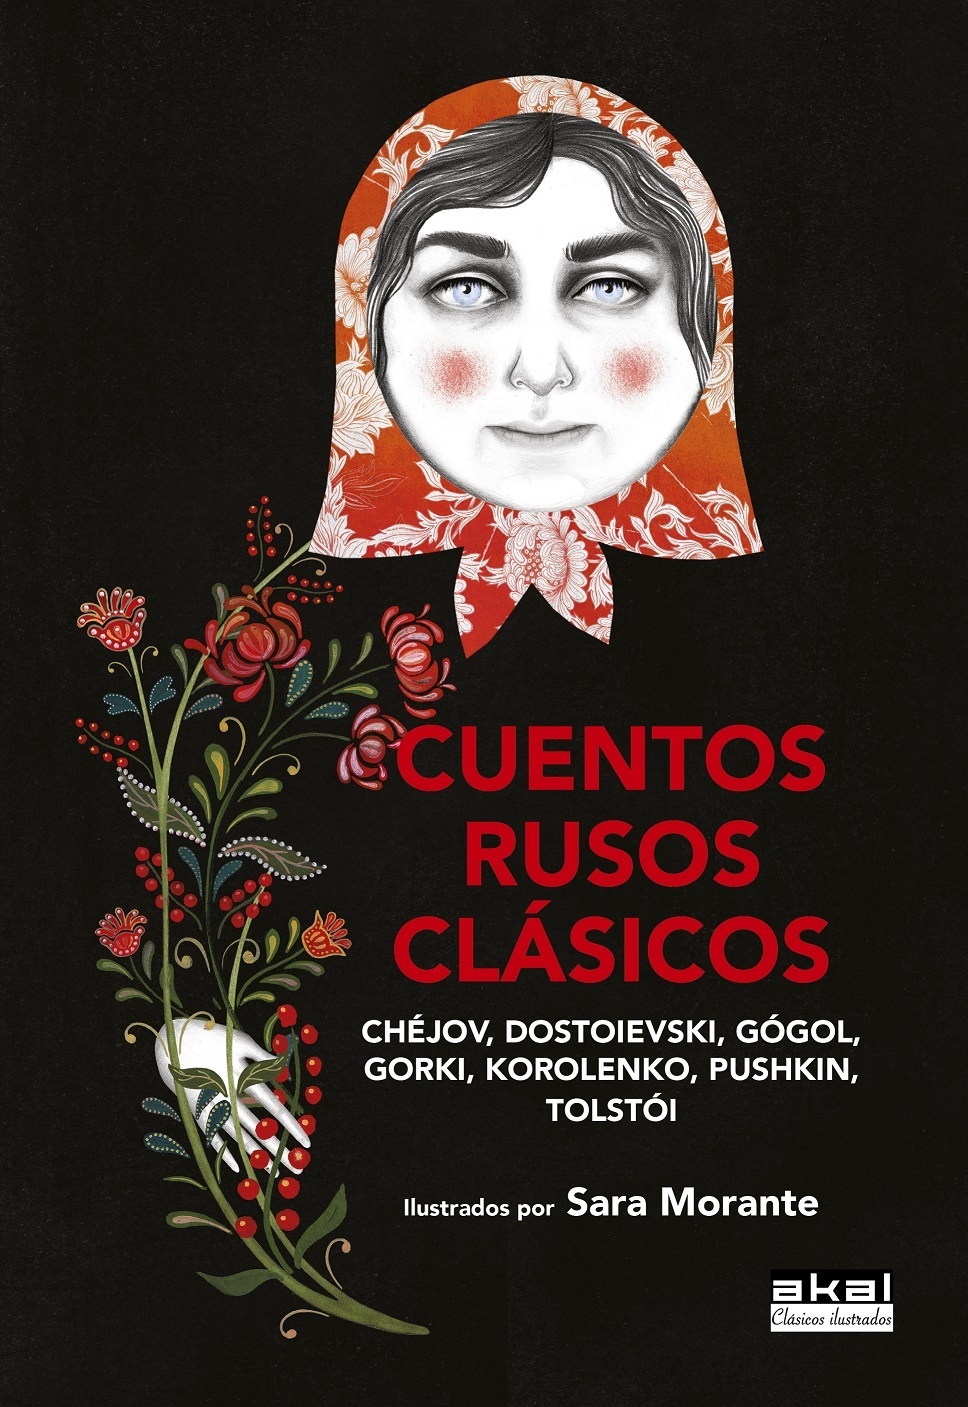 Cuentos rusos clásicos "Ilustrados por Sara Morante". 